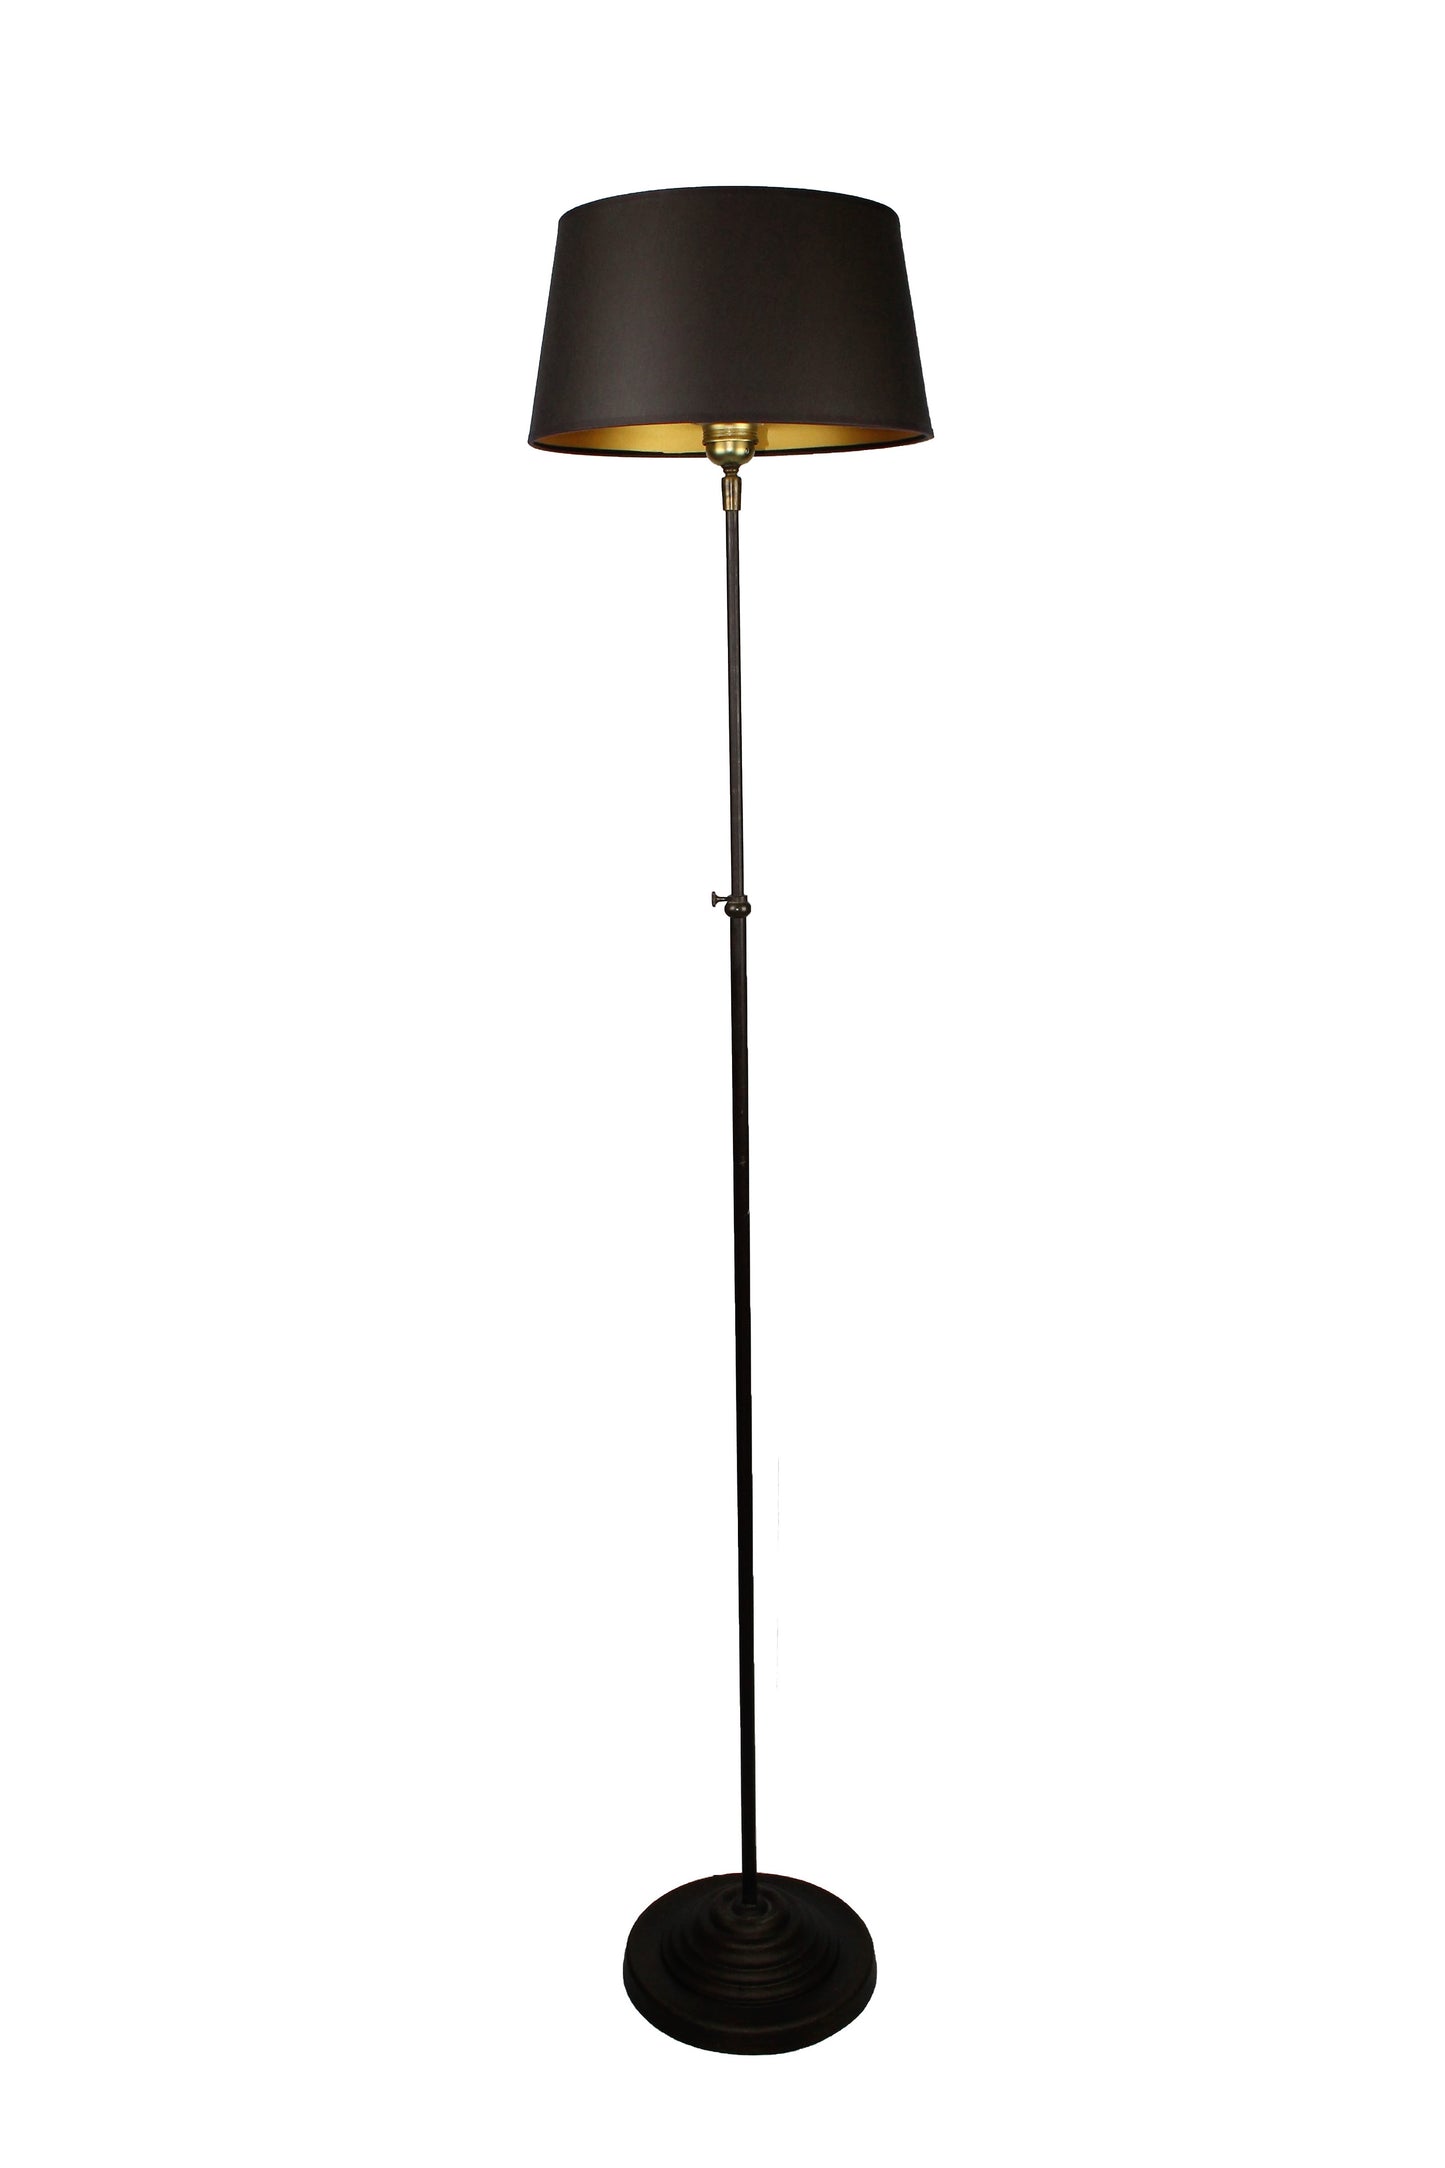 Stehlampe aus Metall braun mit Stoffschirm schwarz gold